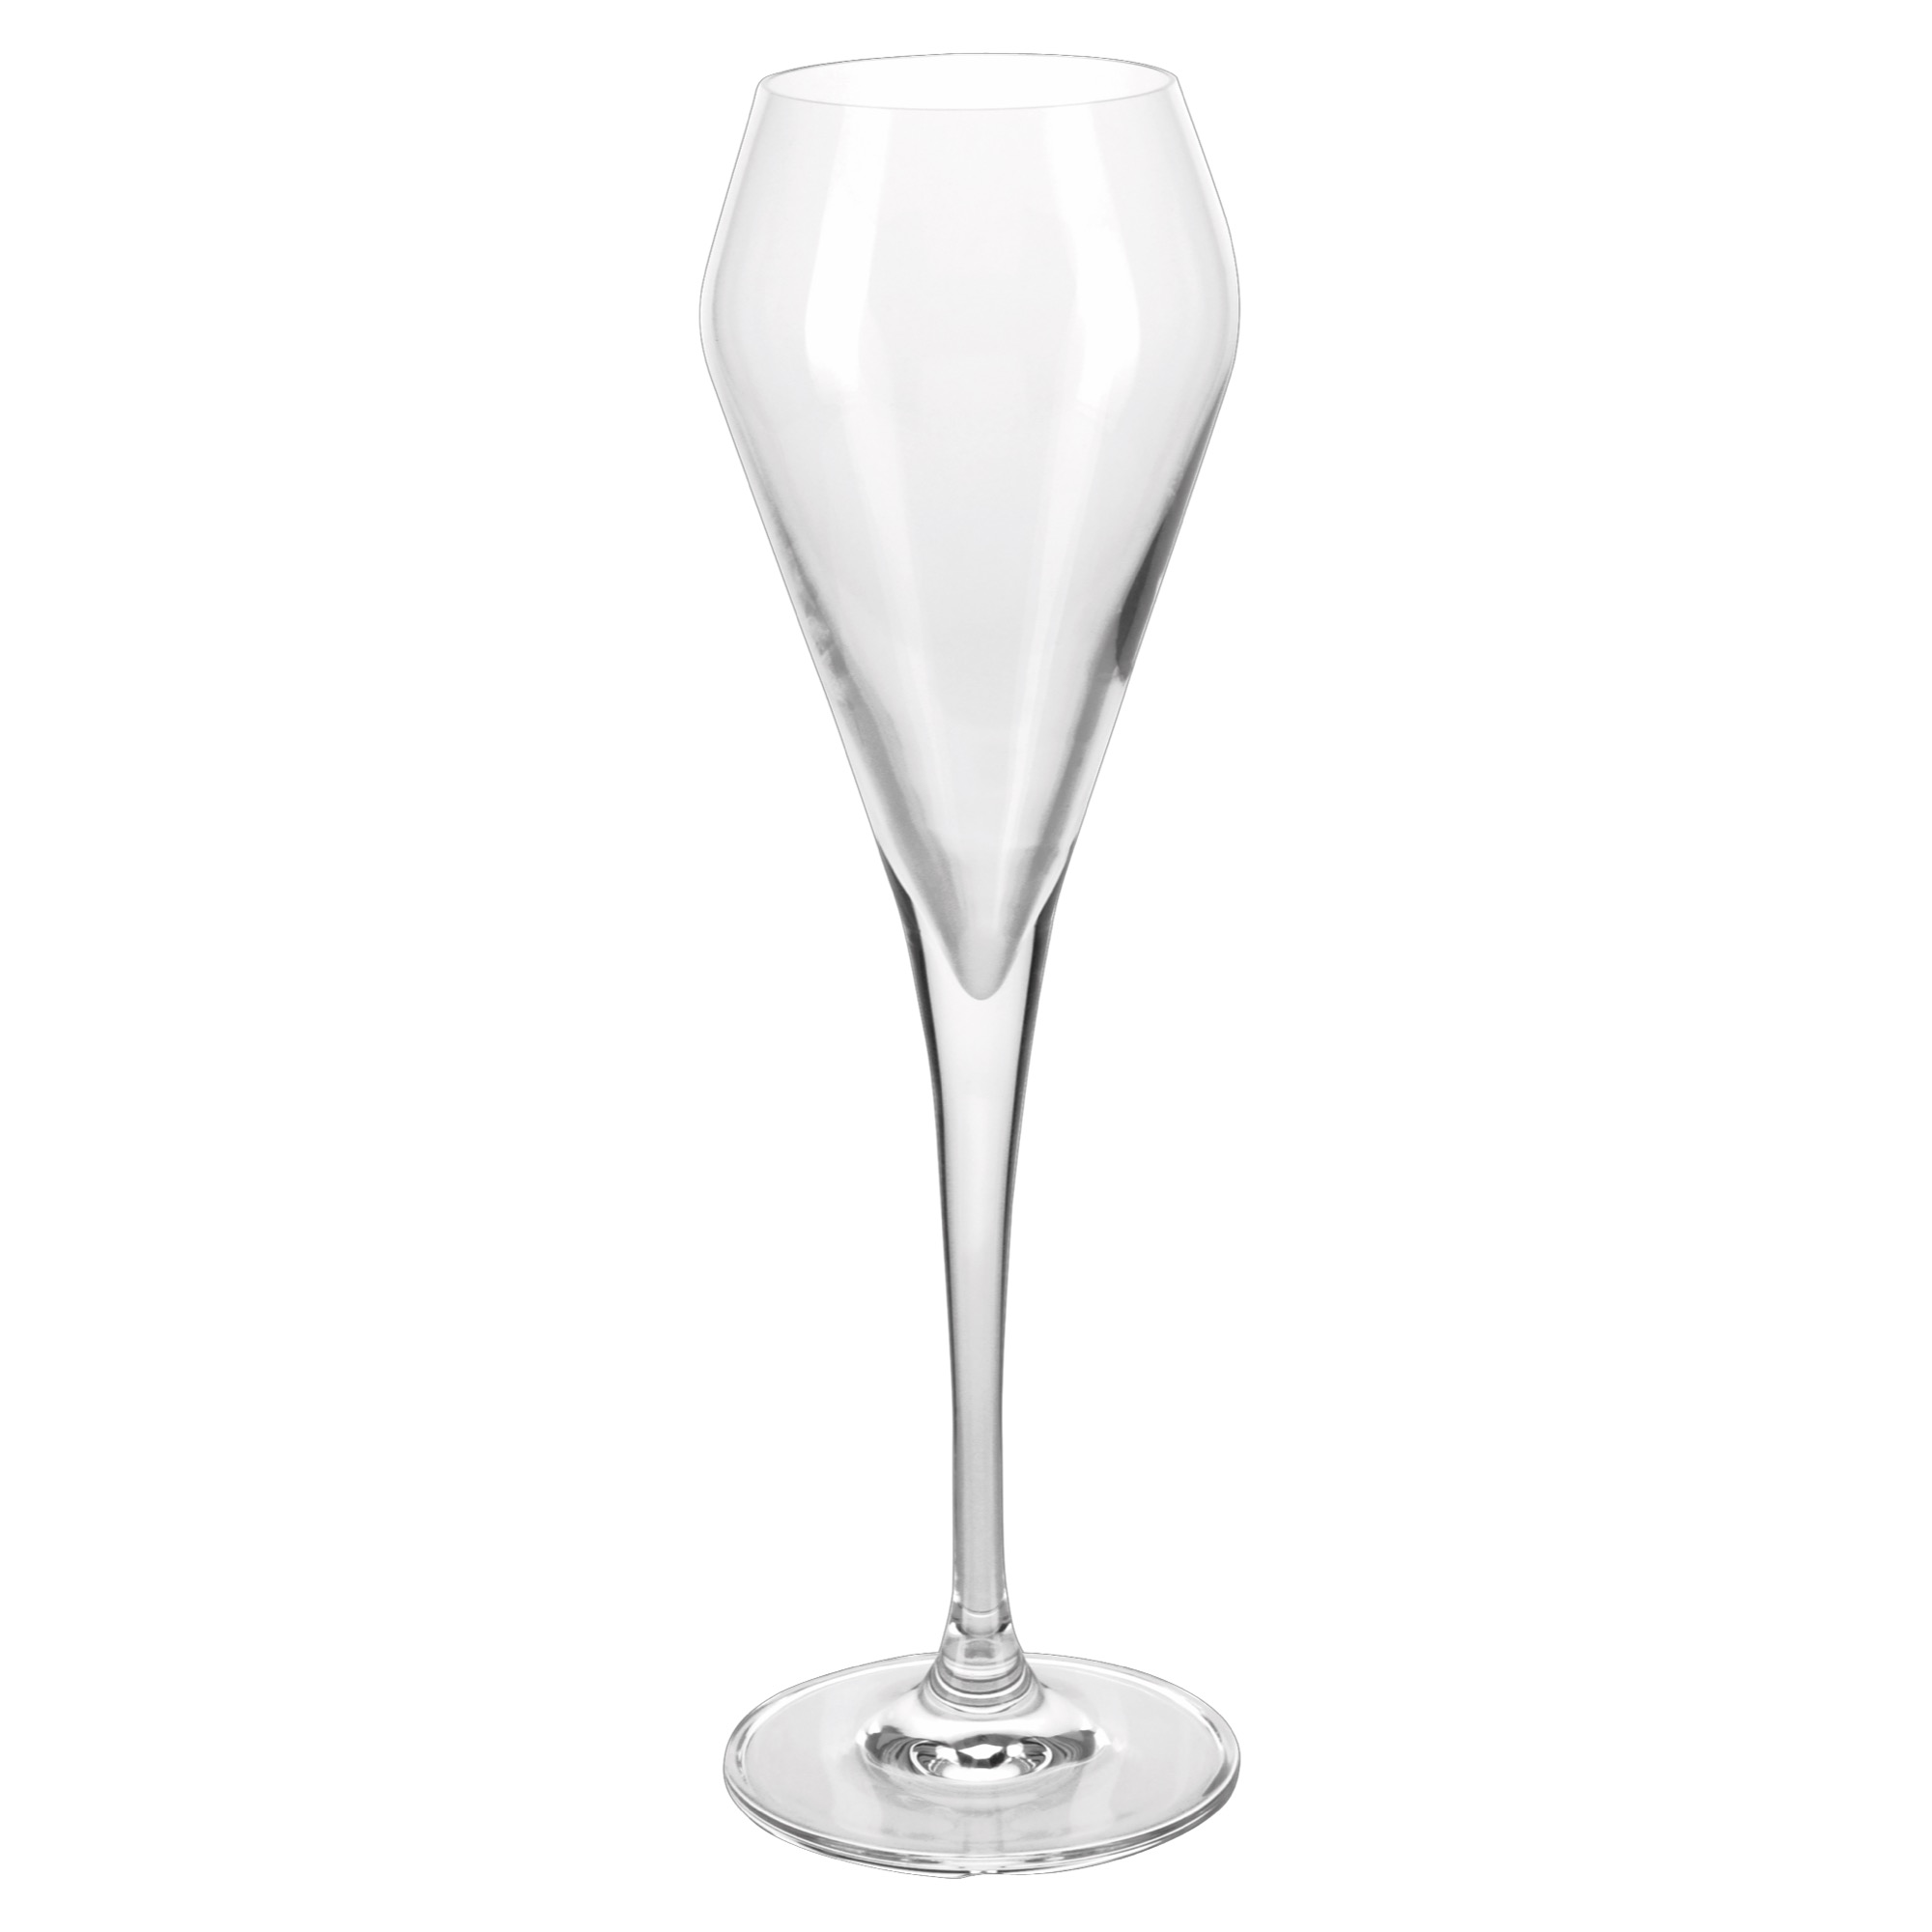 Artner Deco pohár na šamp. 200ml 0,1